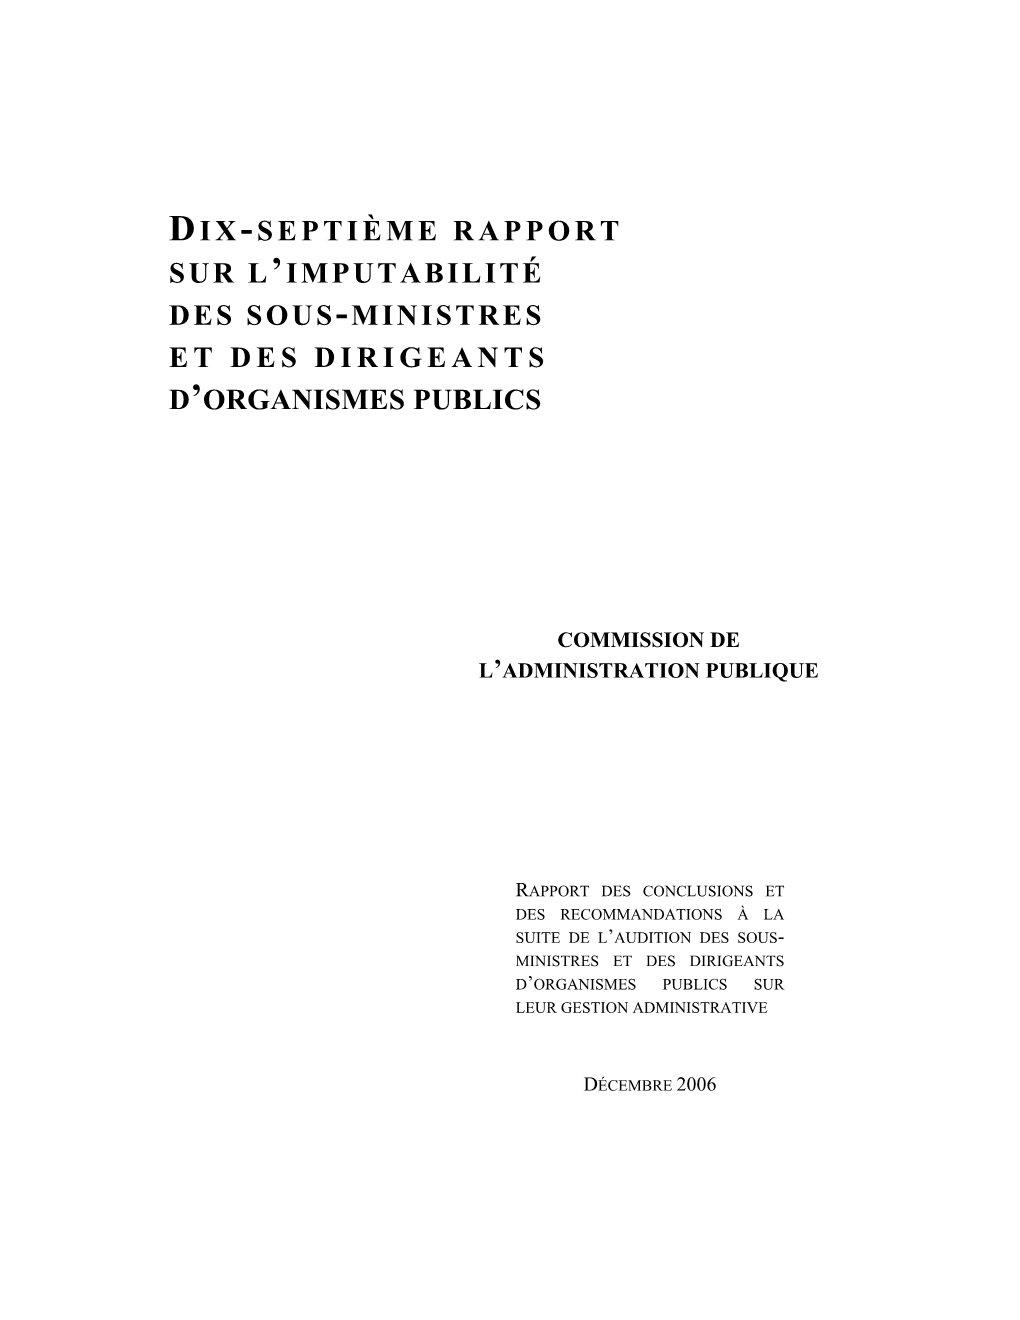 Dix-Septième Rapport Sur L'imputabilité, Décembre 2006